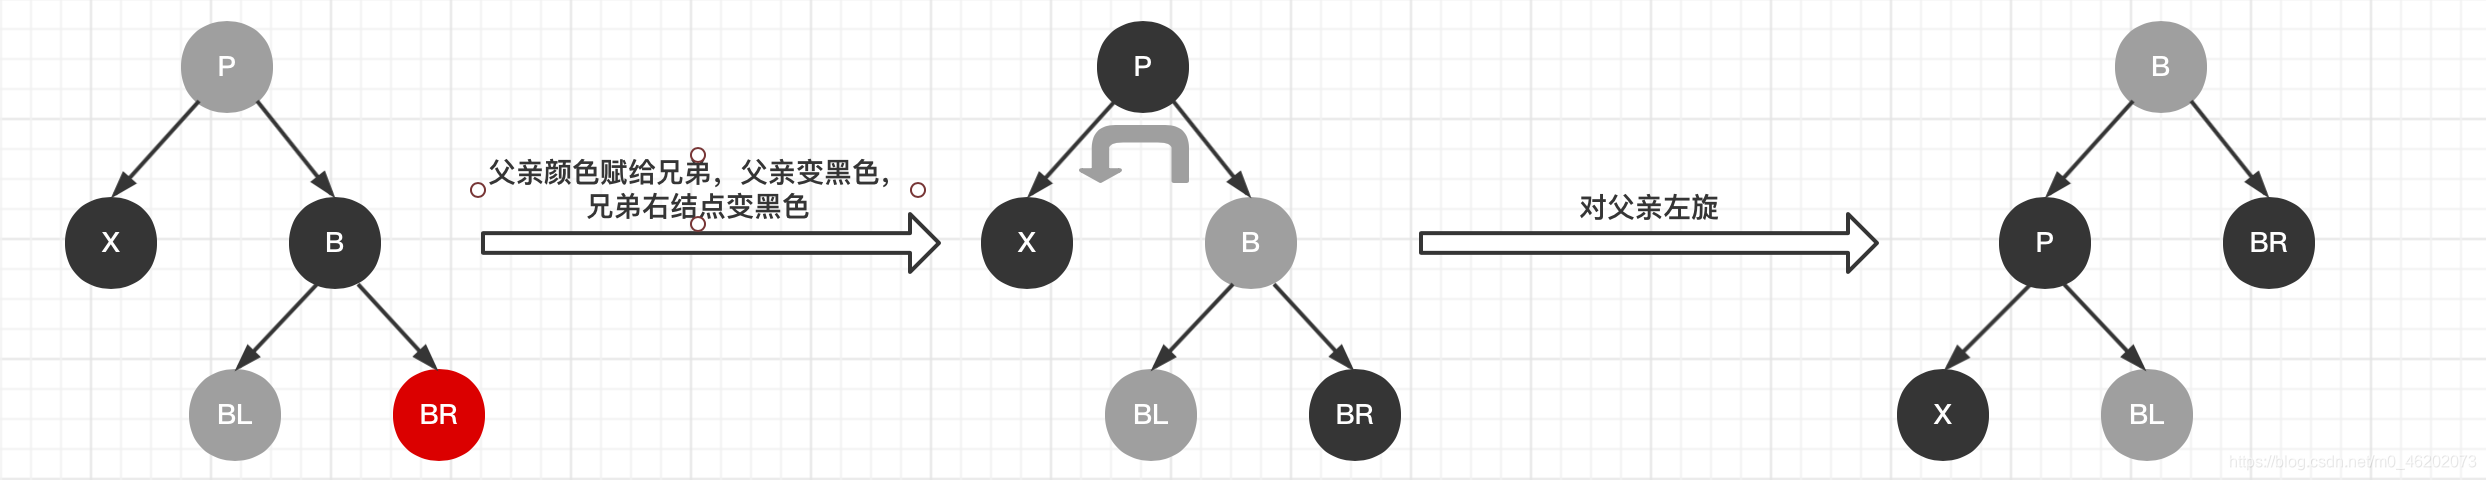 【数据结构】红黑树（R-B Tree）